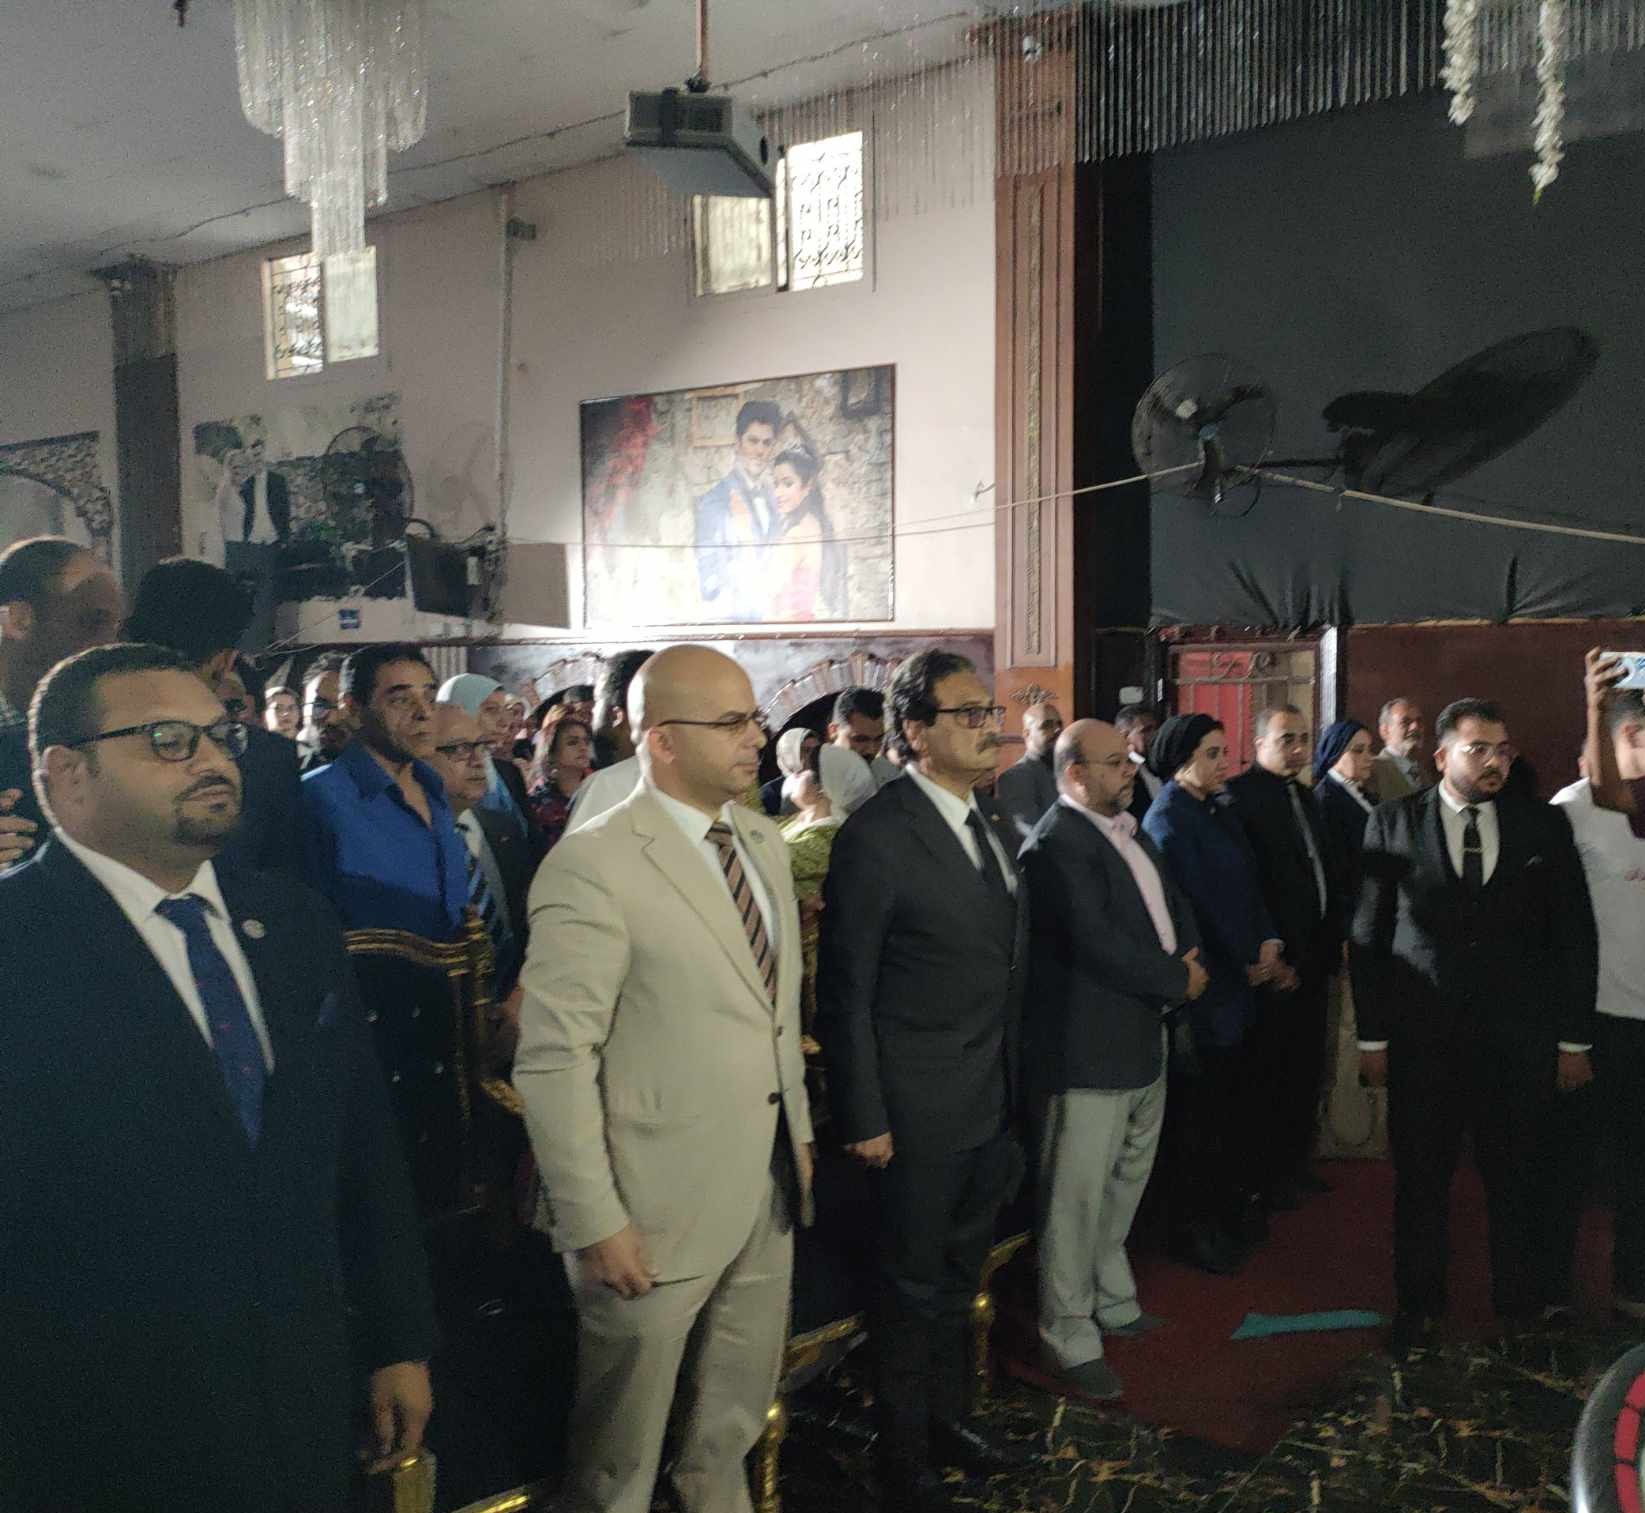 المرشح فريد زهران في مؤتمر بمحافظة. الإسكندرية